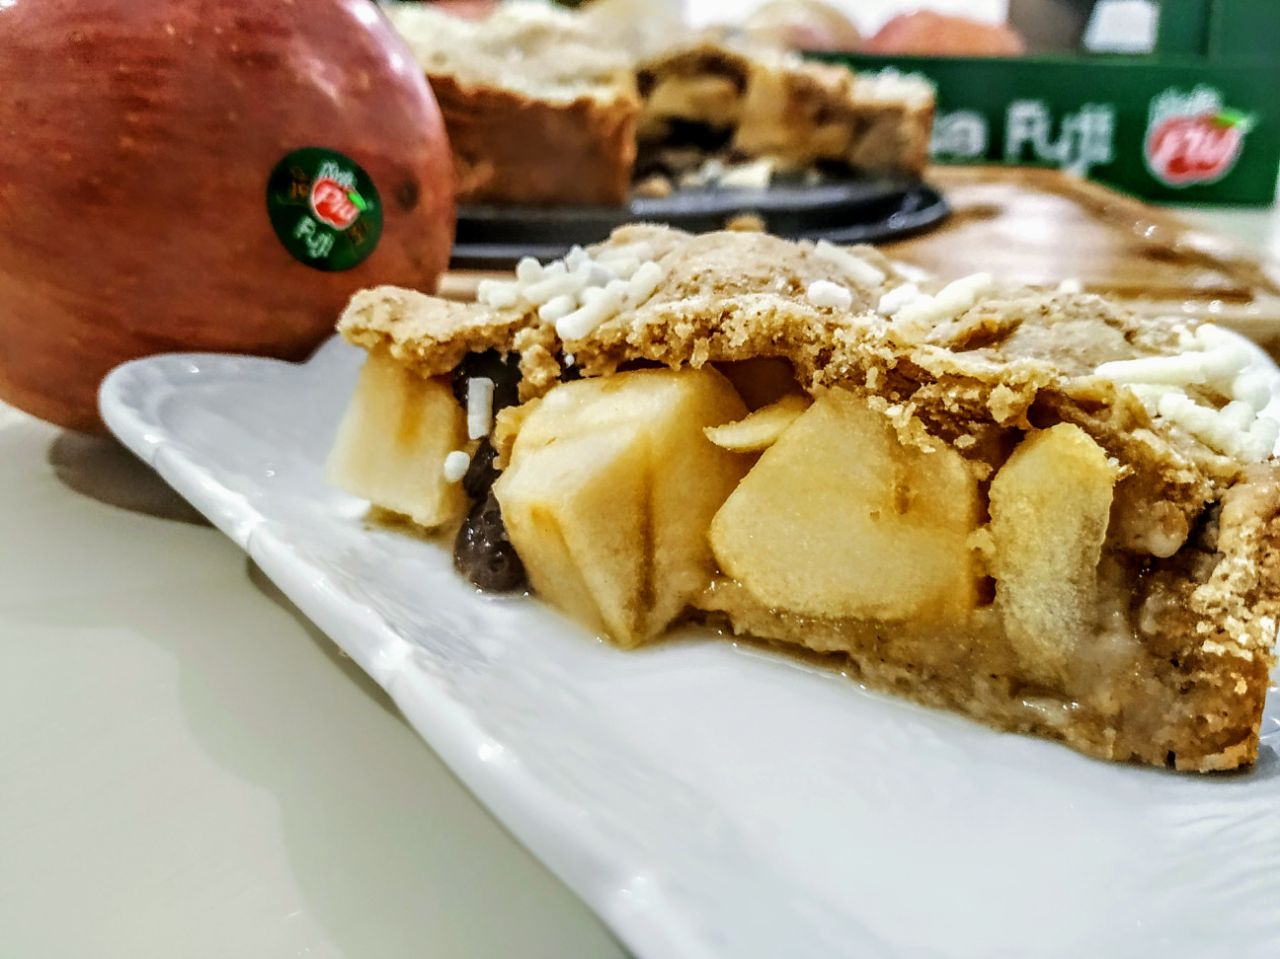 Torta di mele senza burro e senza lattosio: apple pie con farina integrale e zucchero di canna ripiena di mele fuji e uvetta!